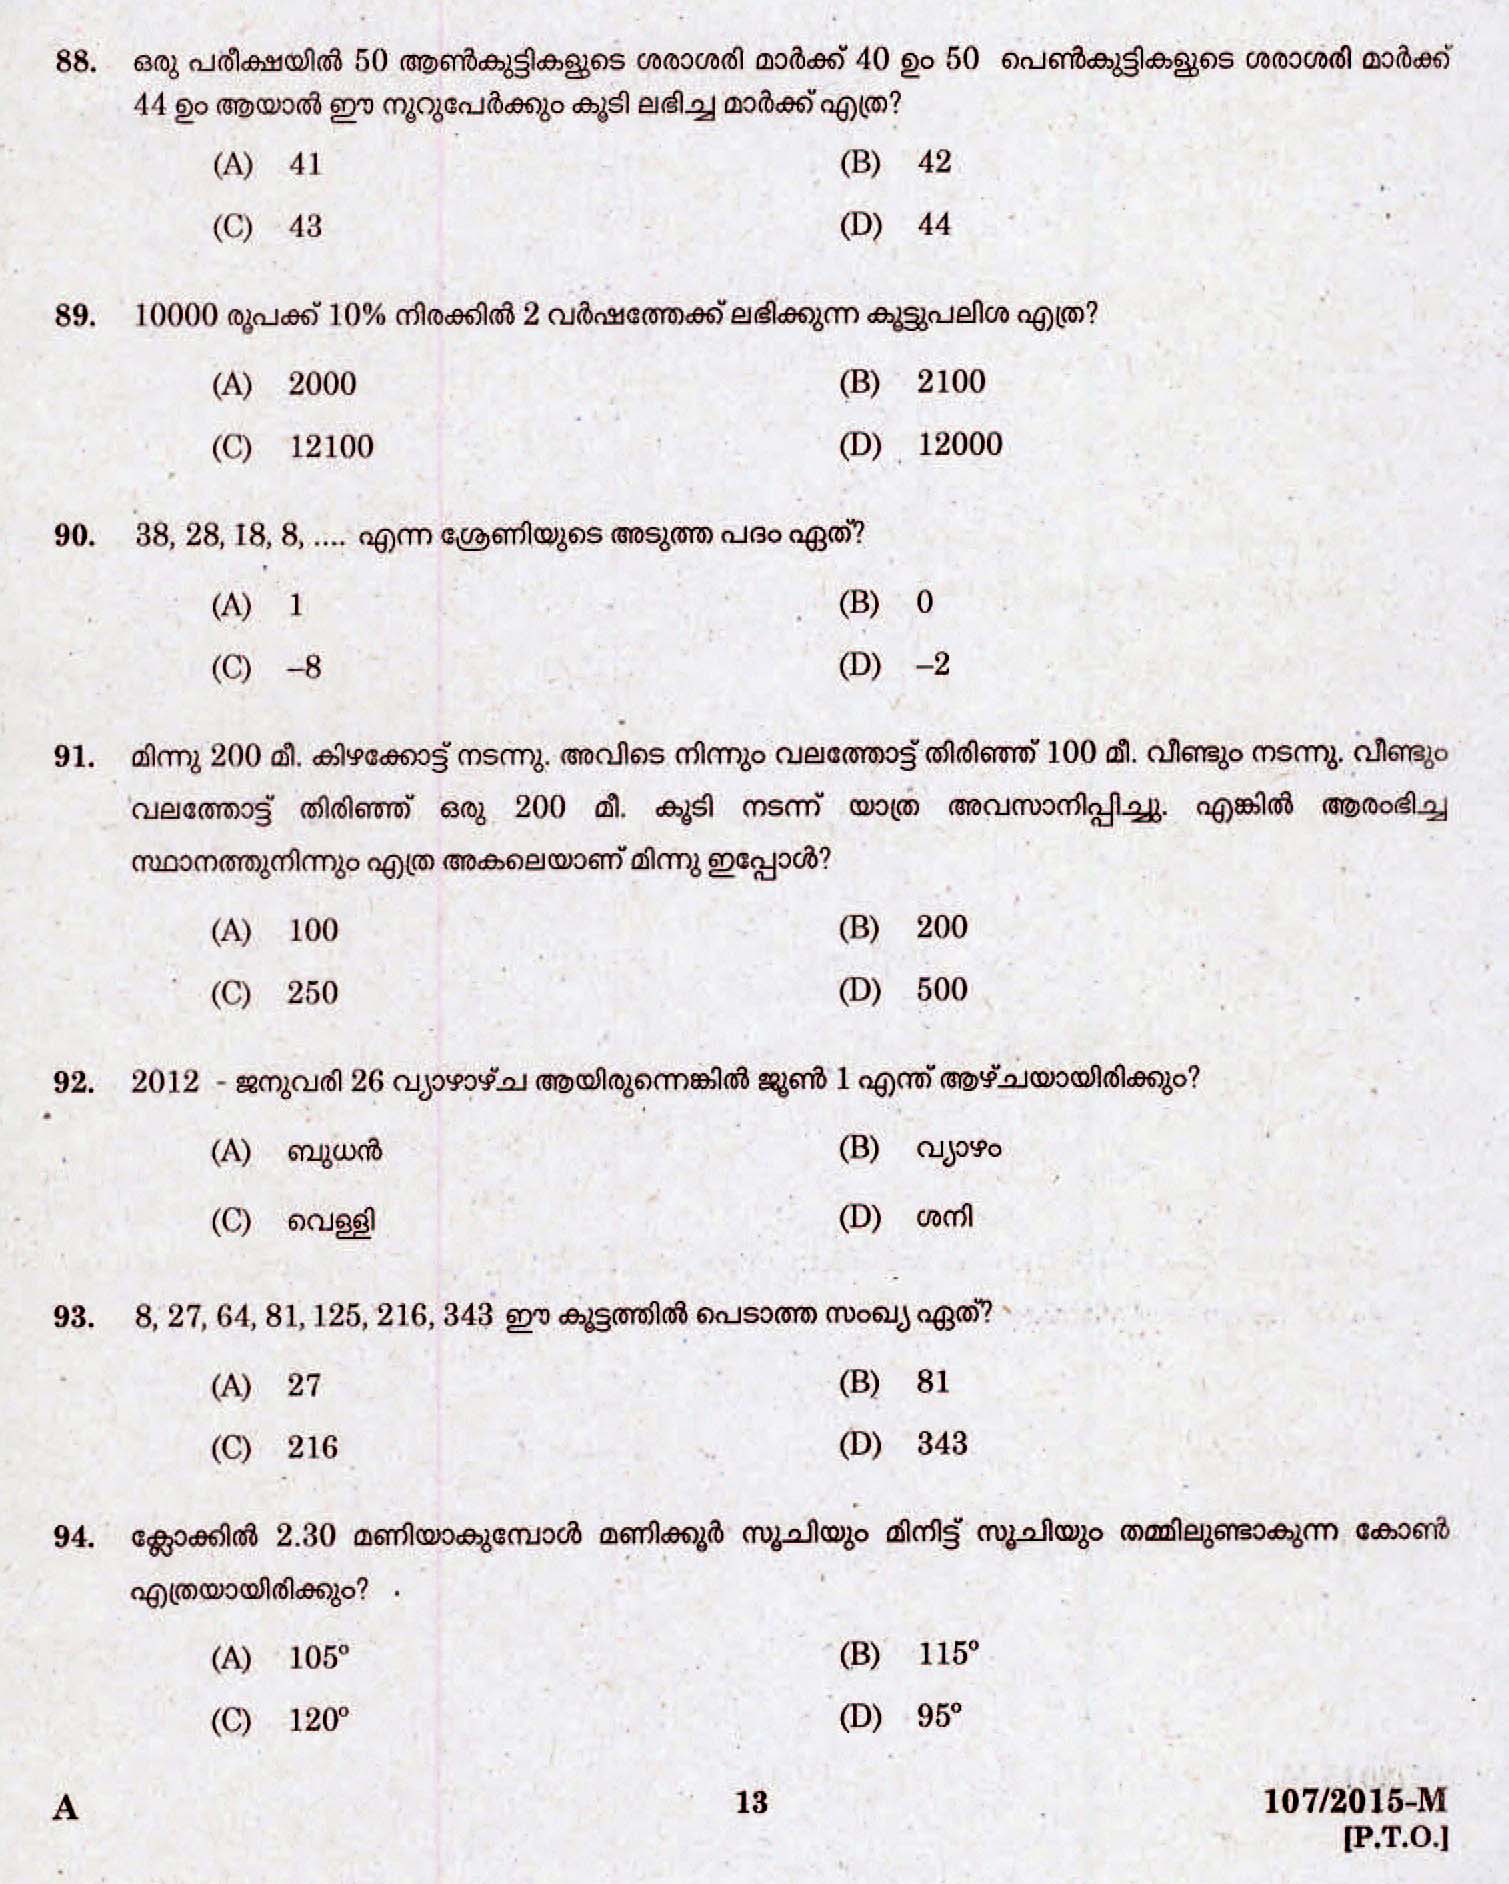 Kerala Last Grade Servants Exam 2015 Question Paper Code 1072015 M 11